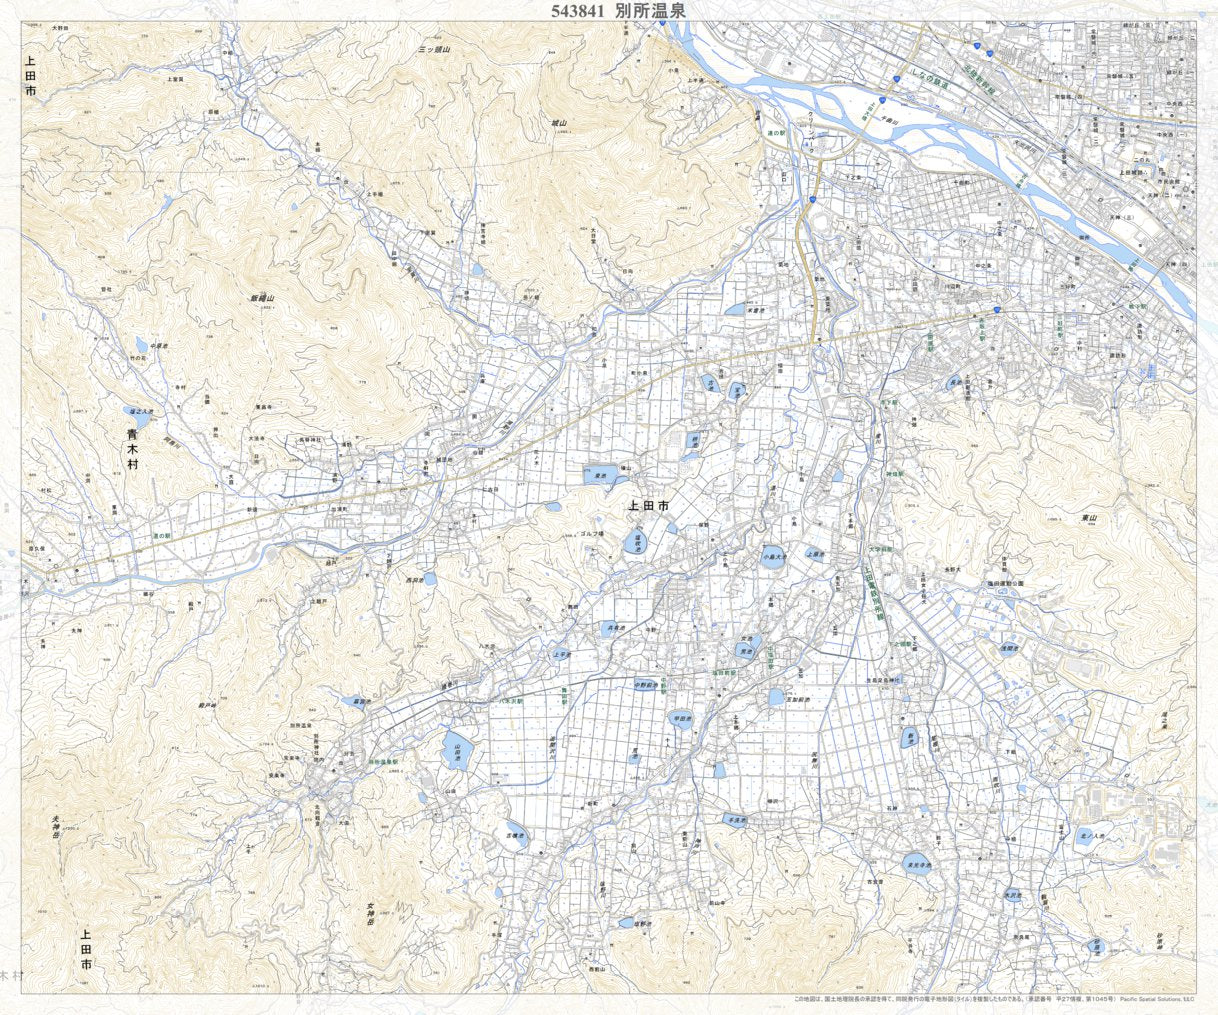 543841 別所温泉 （べっしょおんせん Besshonsen）, 地形図 Map by 